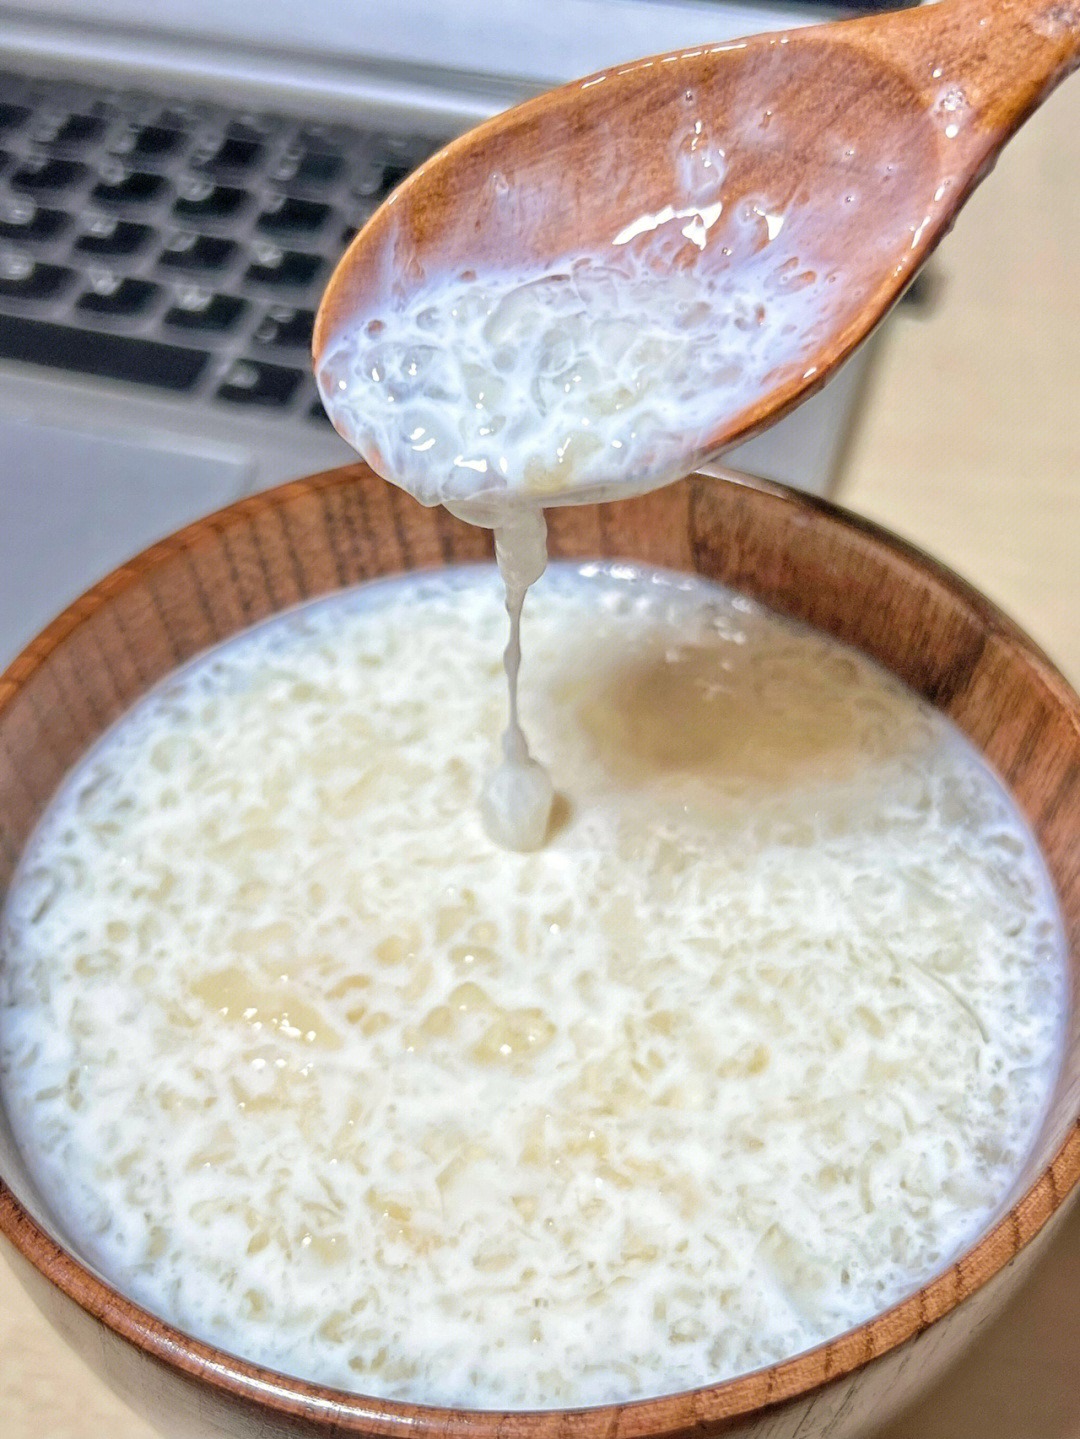 牛奶面膜自制方法图片